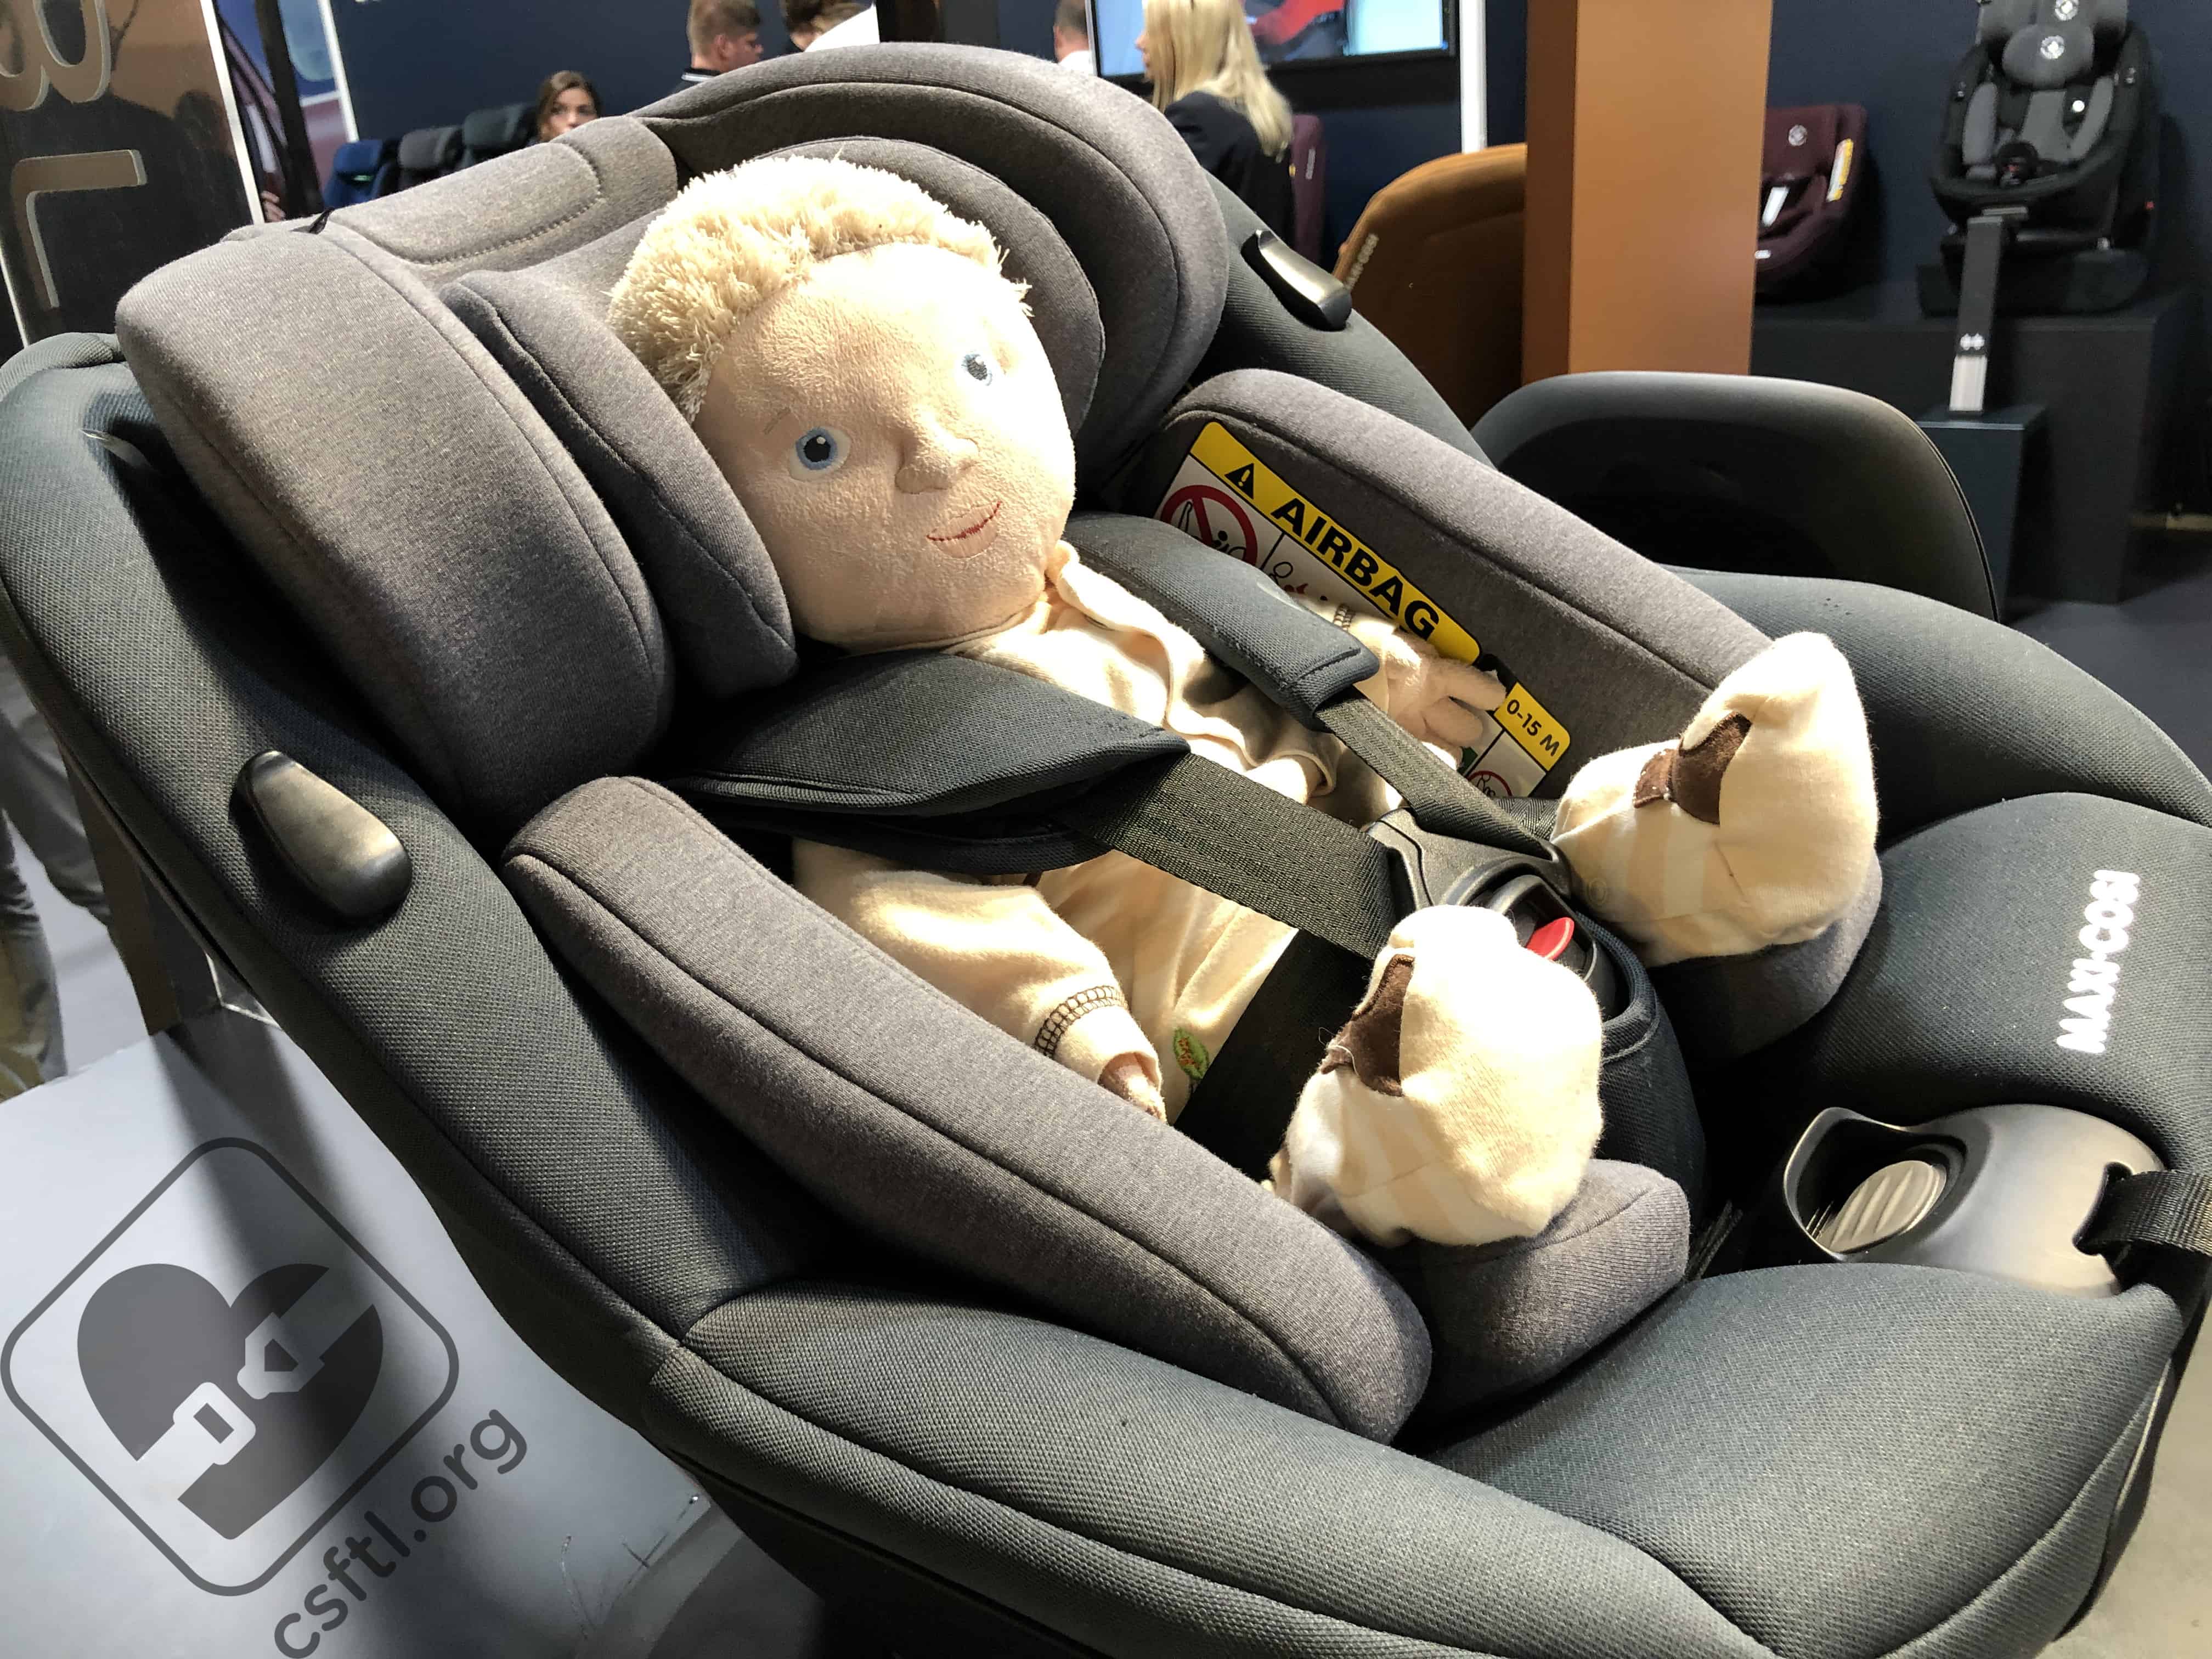 Kind + Jugend 2019 Car Seats For Littles